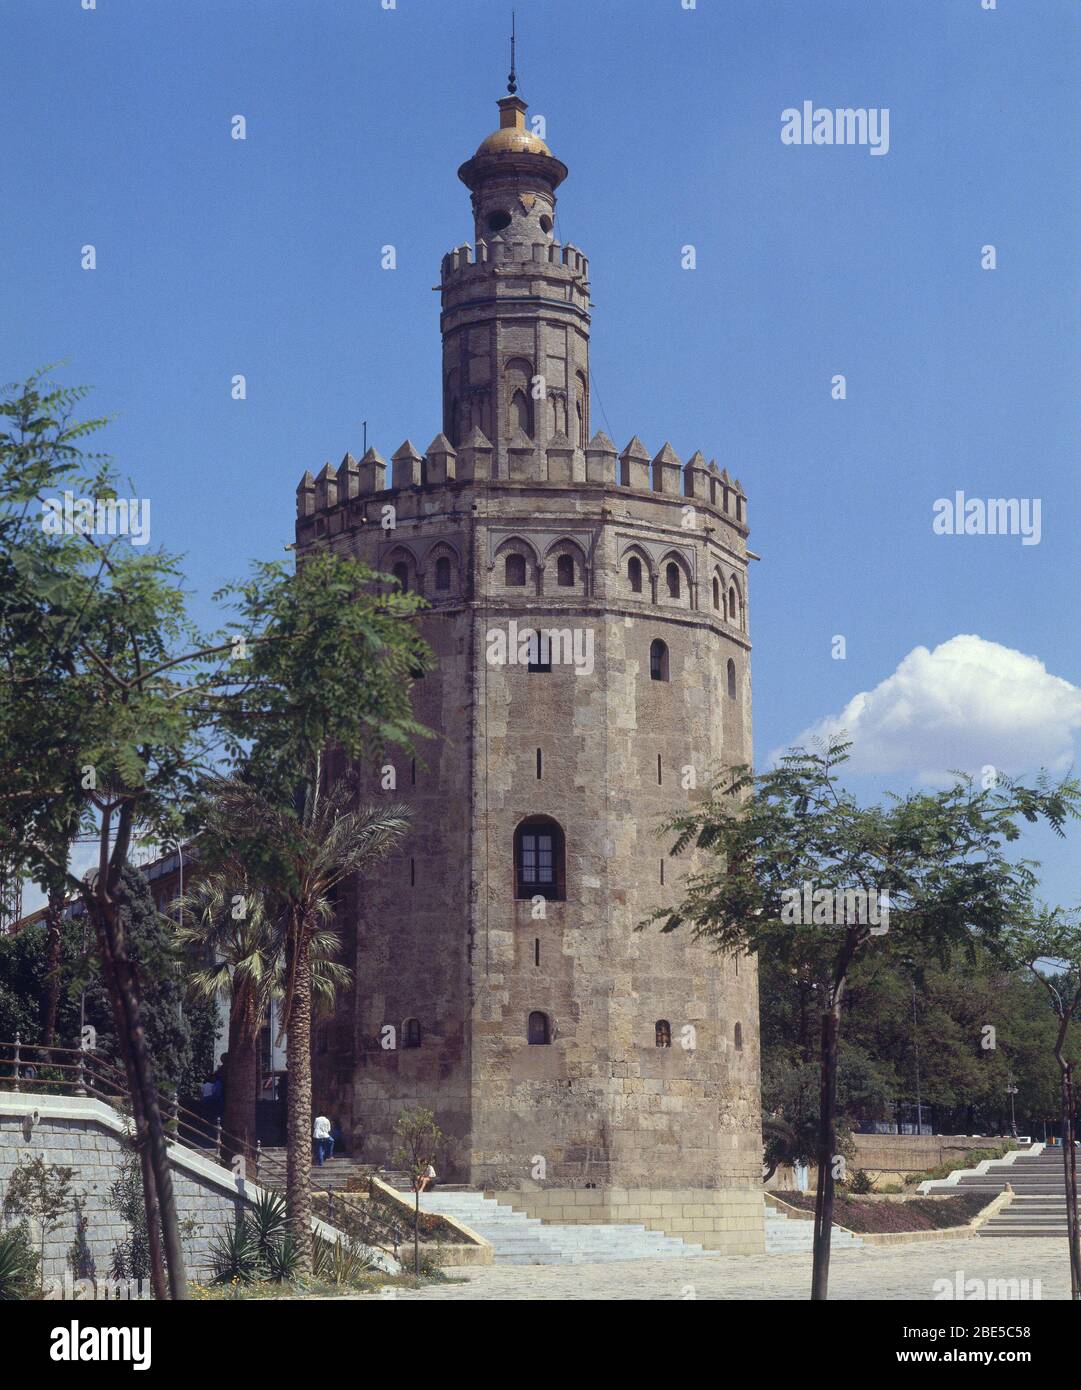 LA TORRE DEL ORO - ARQUITECTURA HISPANOMUSULMANA - PERIODO ALMOHADE - SIGLO XIII - TORRE ALBARRANA. Location: GOLDEN TOWER. Sevilla. Seville. SPAIN. Stock Photo